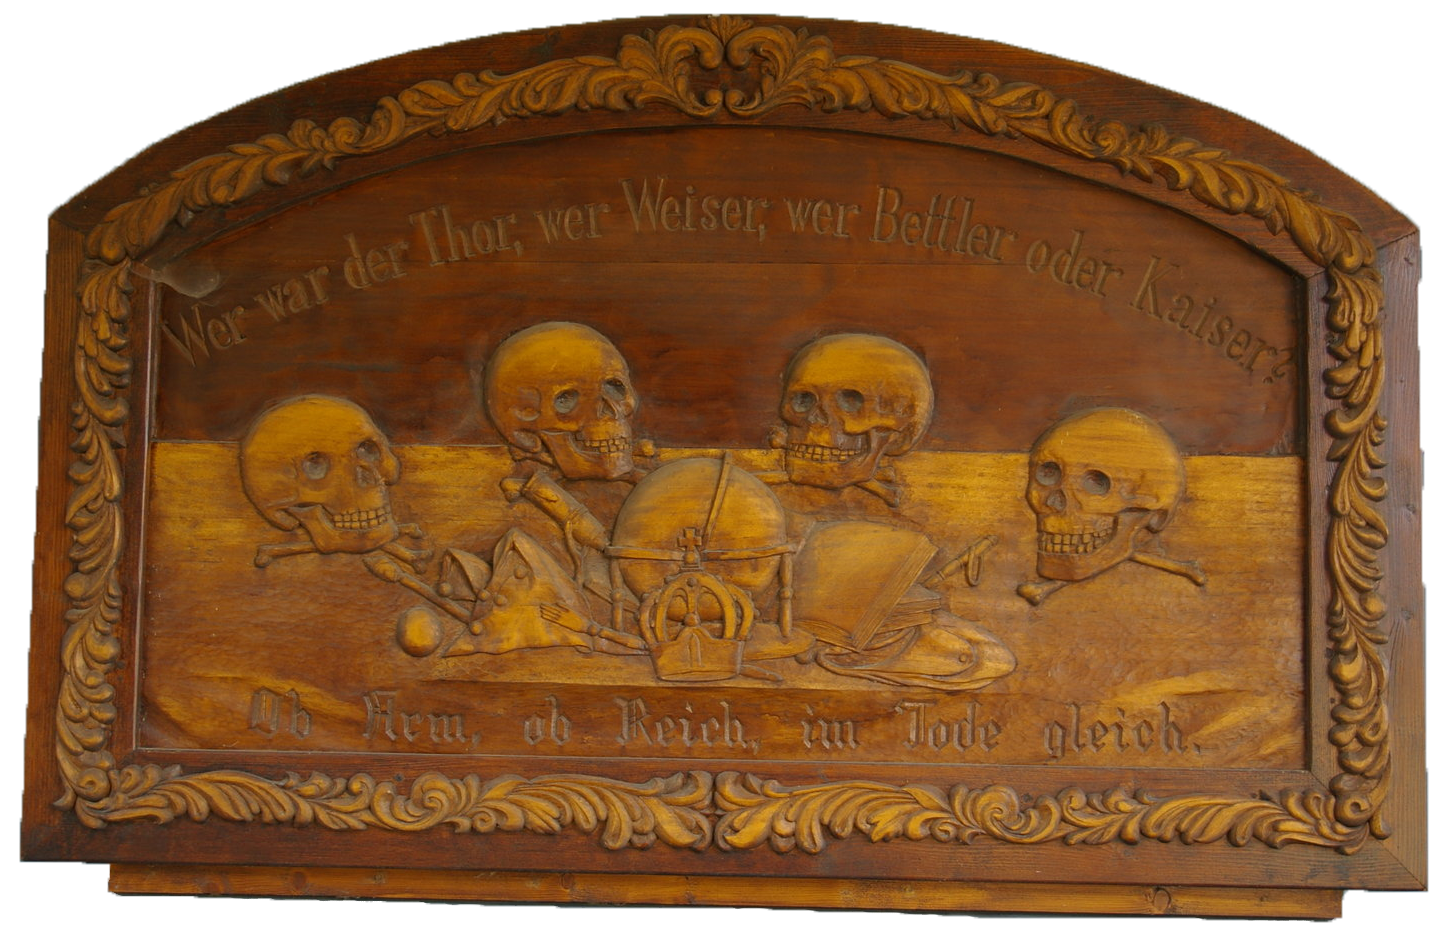 Freimaurerischer Holzschnitt, vermutlich 18. Jahrhundert, zeigt Totenschädel zur Erinnerung an die Vergänglichkeit allen Seins.